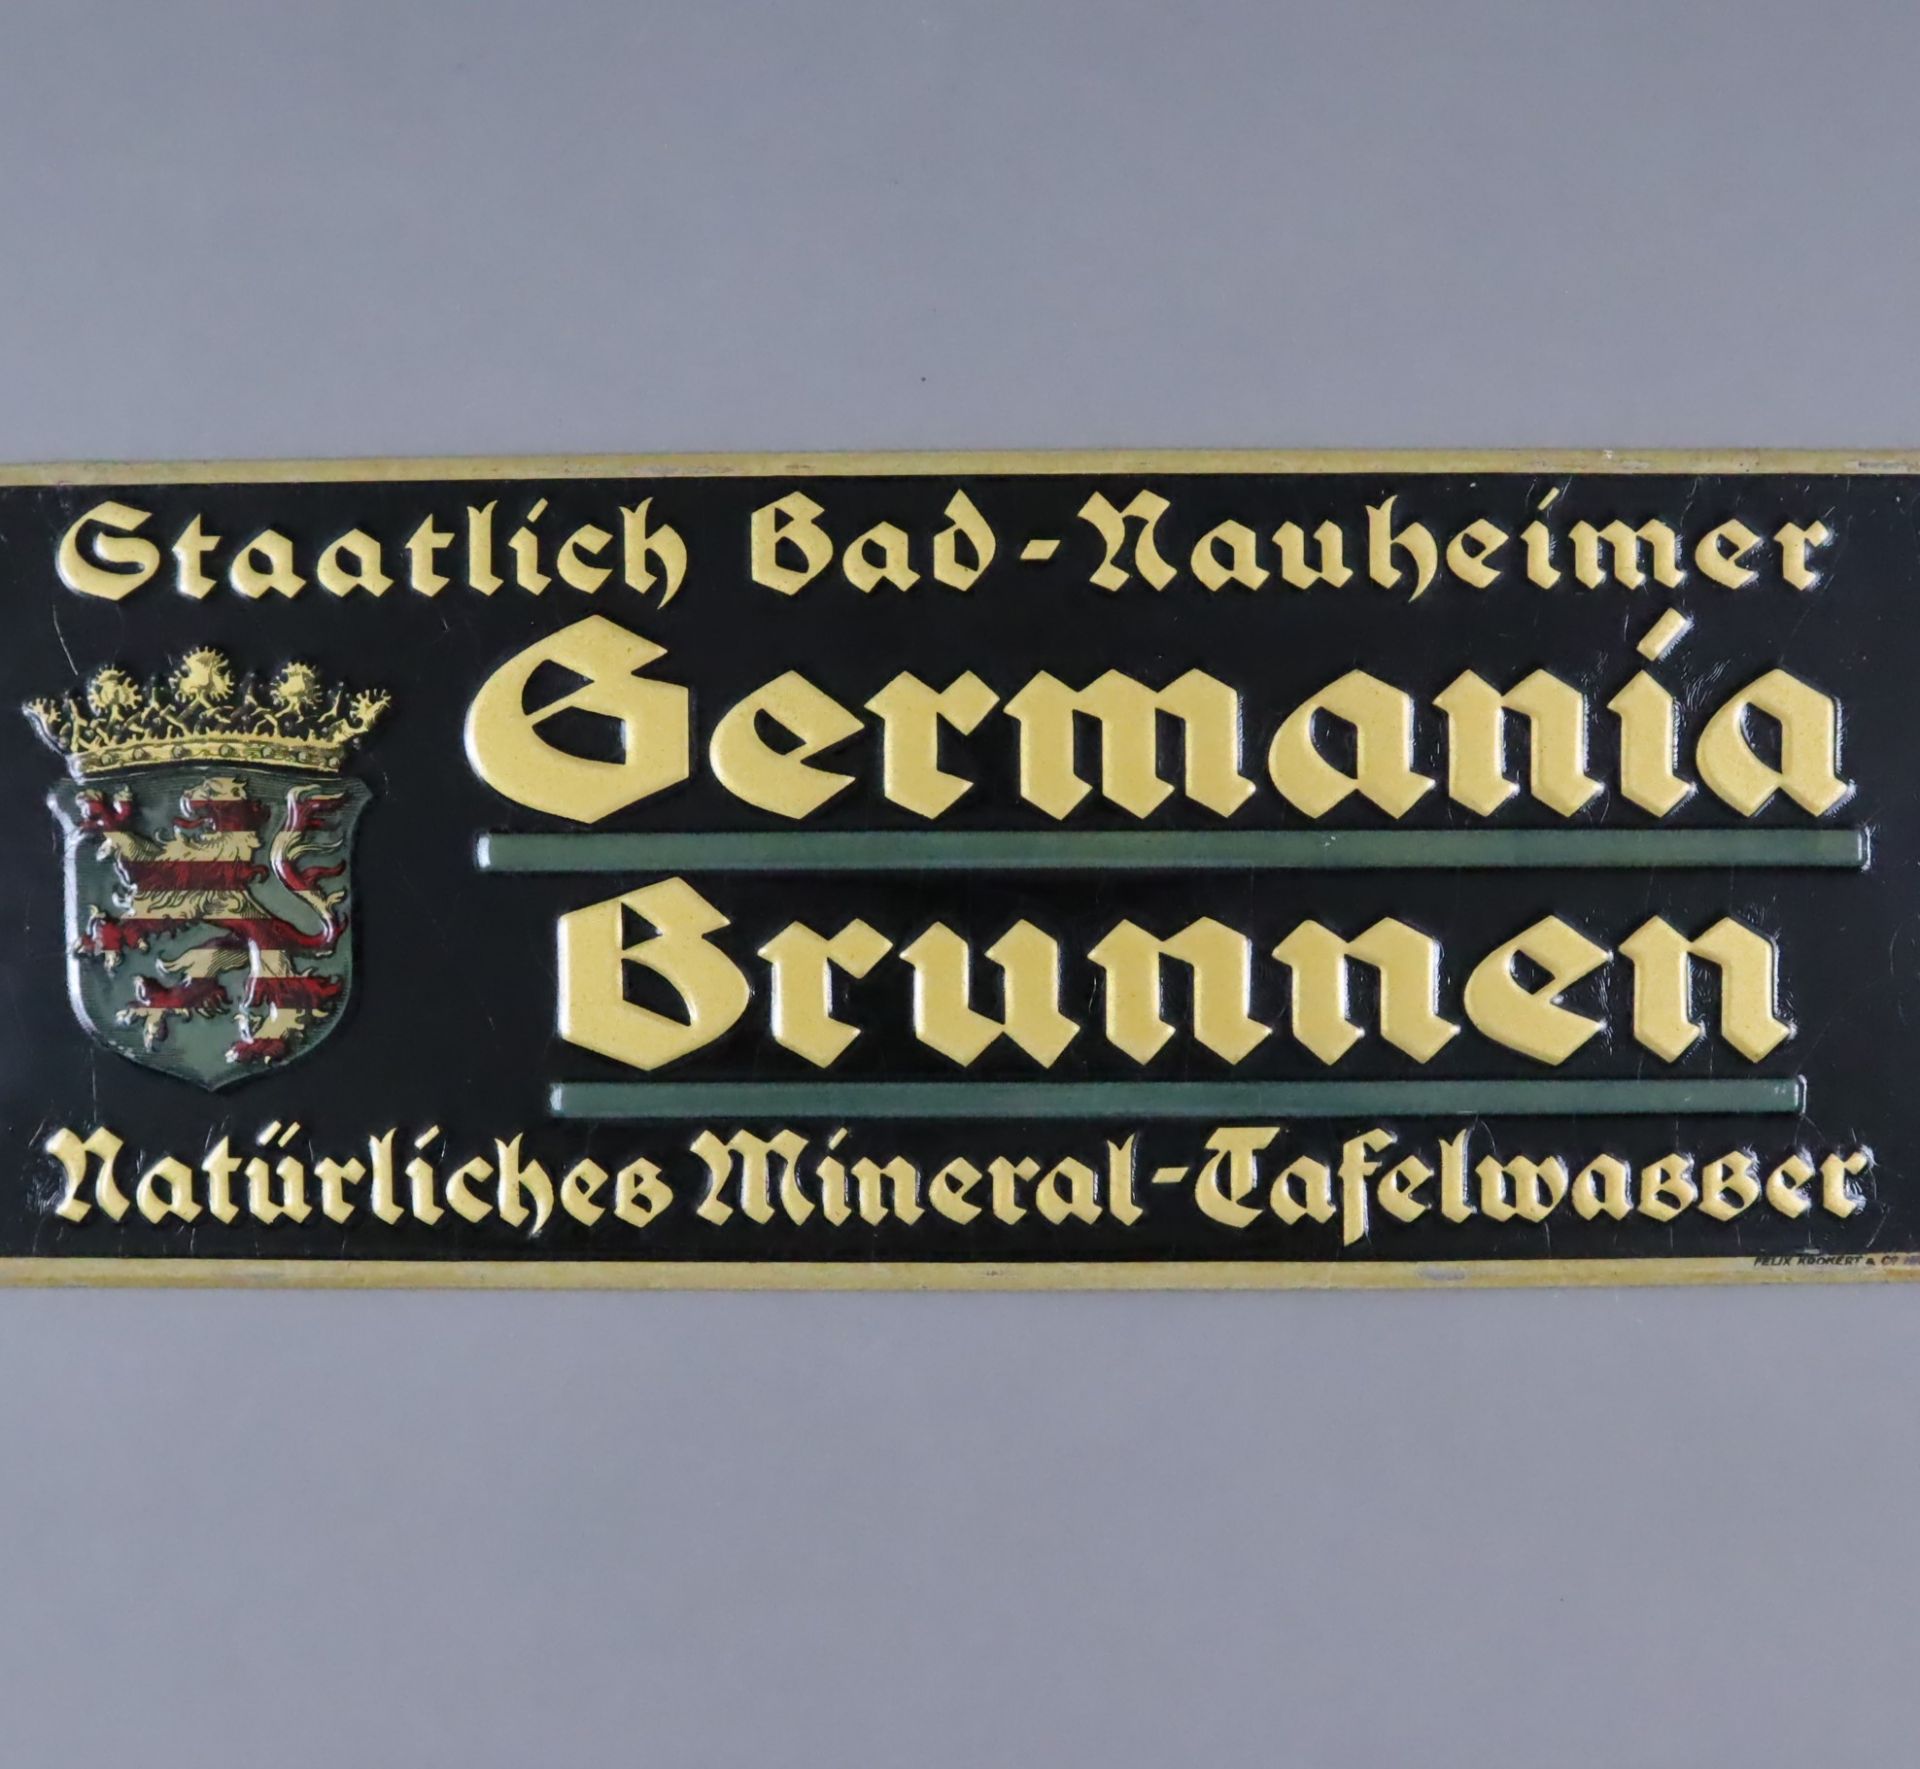 Germania Brunnen-Werbeschild - um 1900, Blech, schwarz, in Gold und Rot gefasst, rechteckiges Schil - Bild 2 aus 5